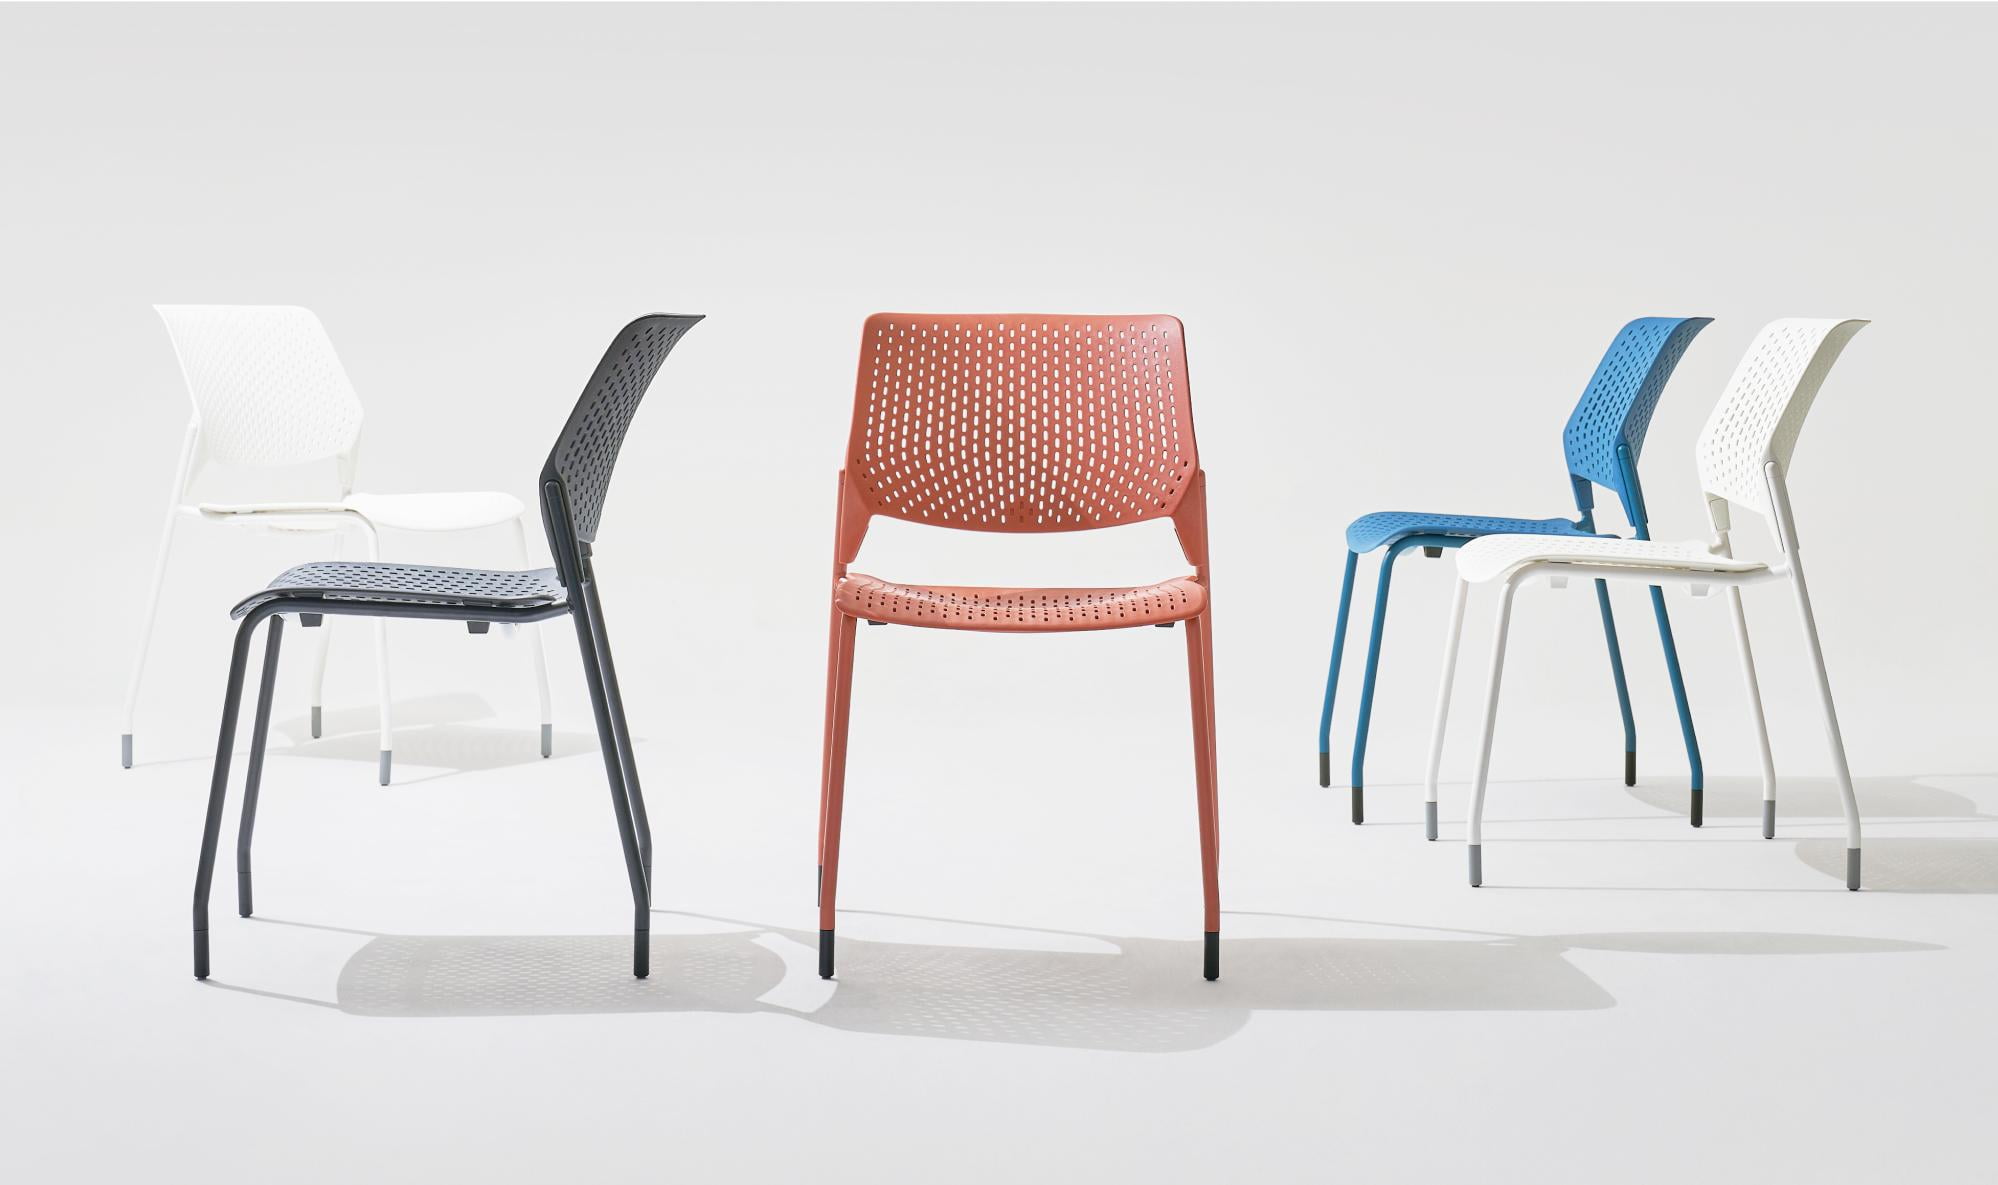 Winden, một chiếc ghế nội thất sống động của Fursys Hàn Quốc đã giành được Giải thưởng IFdesign 2023. Winden là một chiếc ghế nội thất kiểu dáng đẹp với các biến thể màu sắc hấp dẫn và sự đánh giá cao về chi tiết.